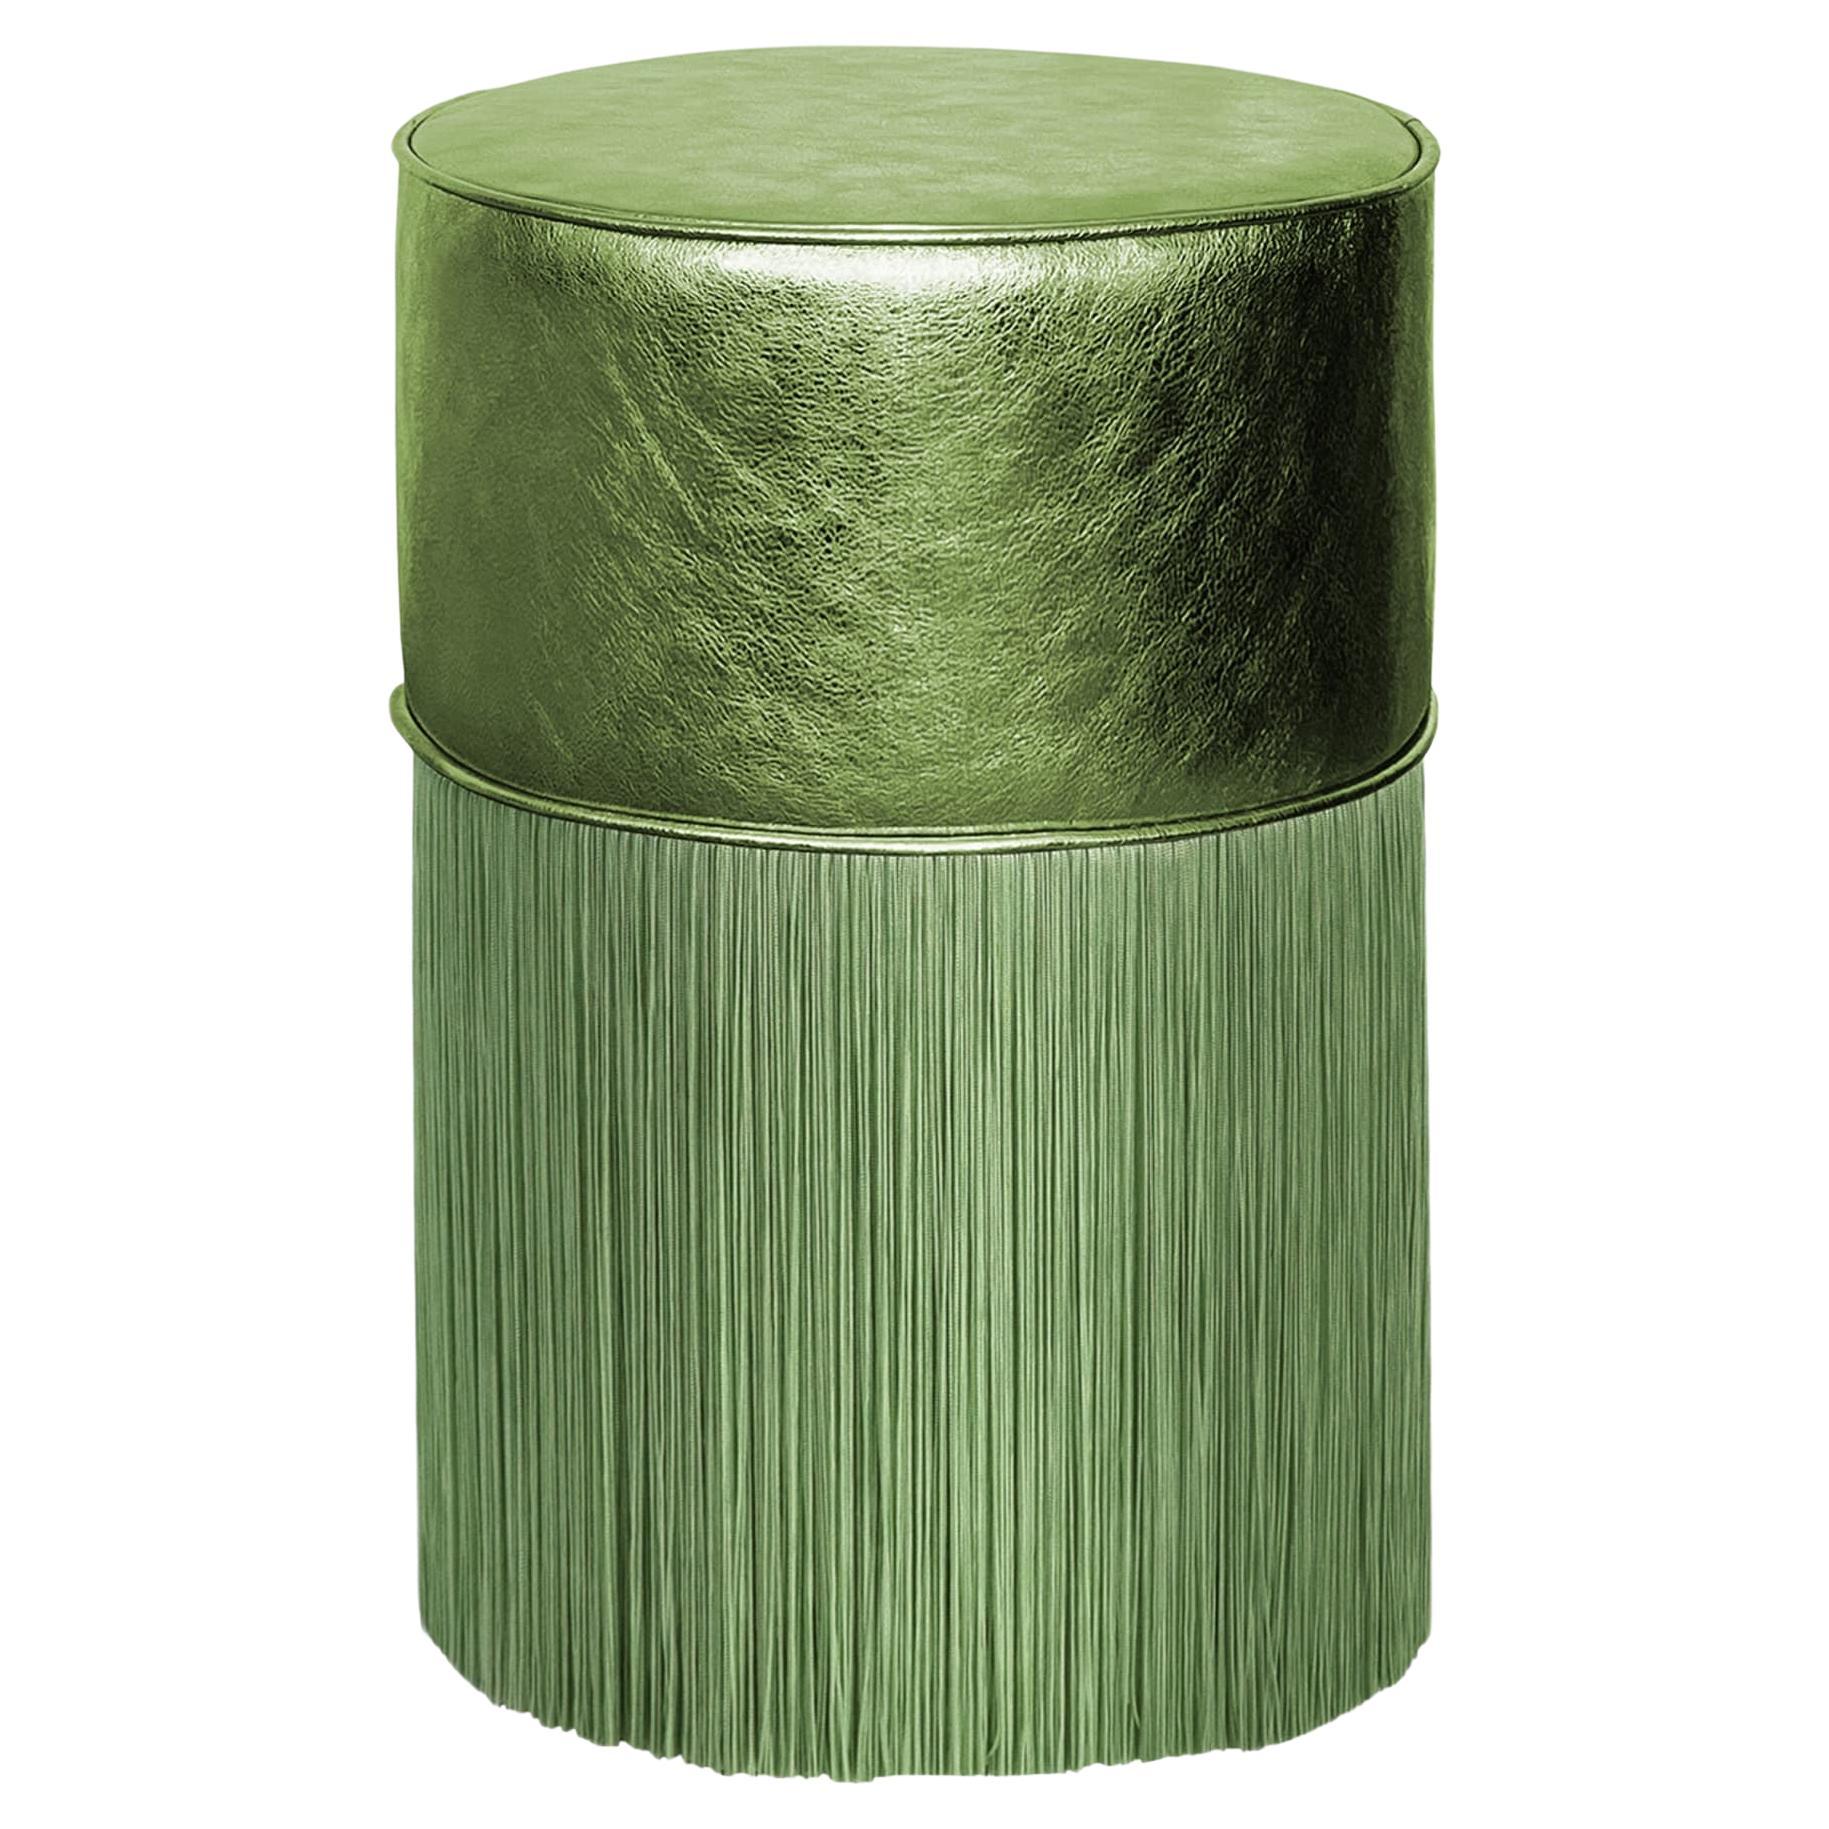 Pouf vert éblouissant en cuir métallique de Lorenza Bozzoli